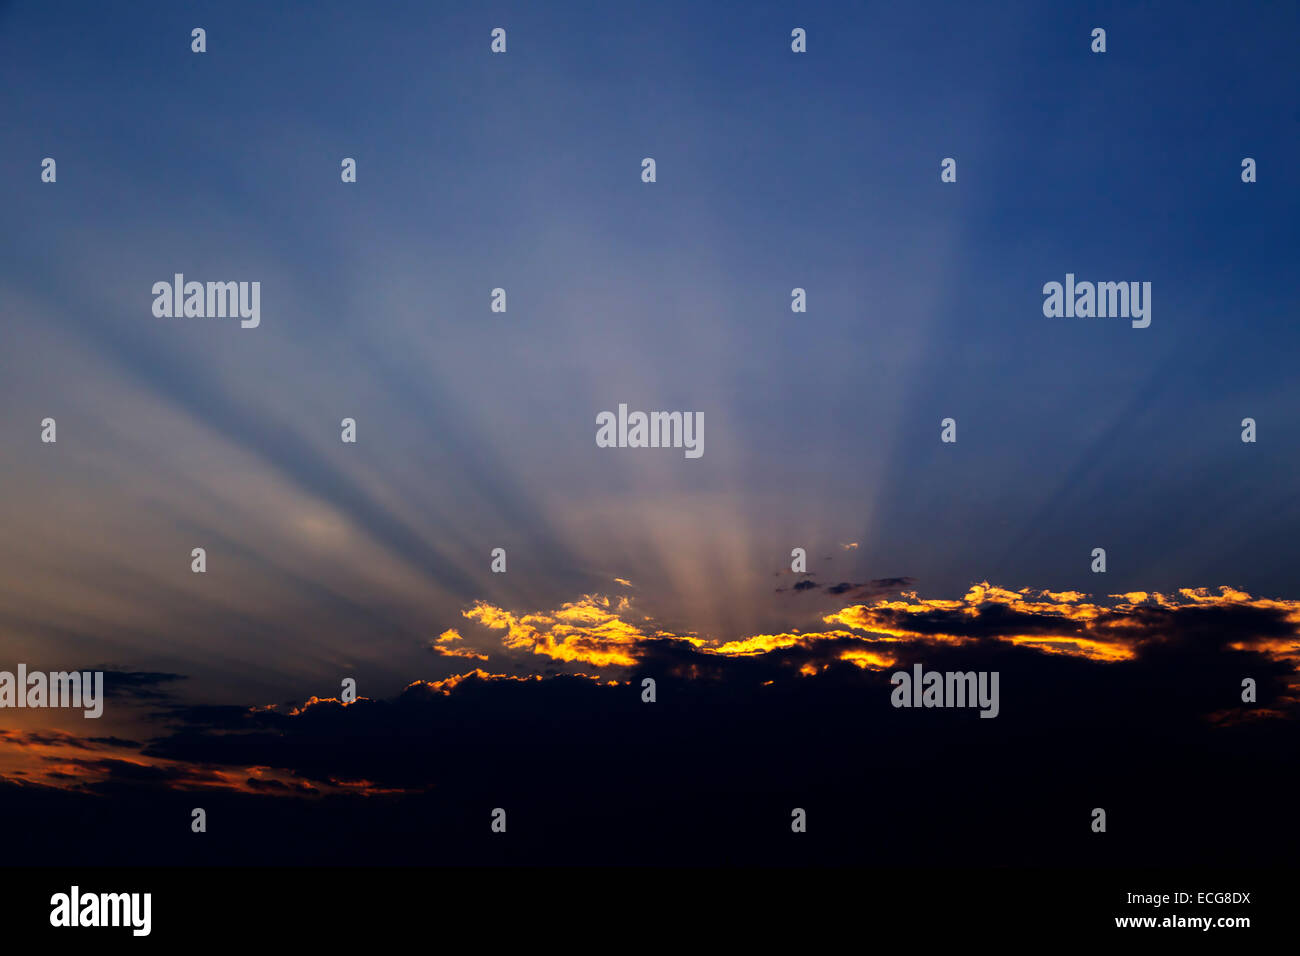 Strahlen von Licht, dramatischen Sonnenuntergang Stockfoto